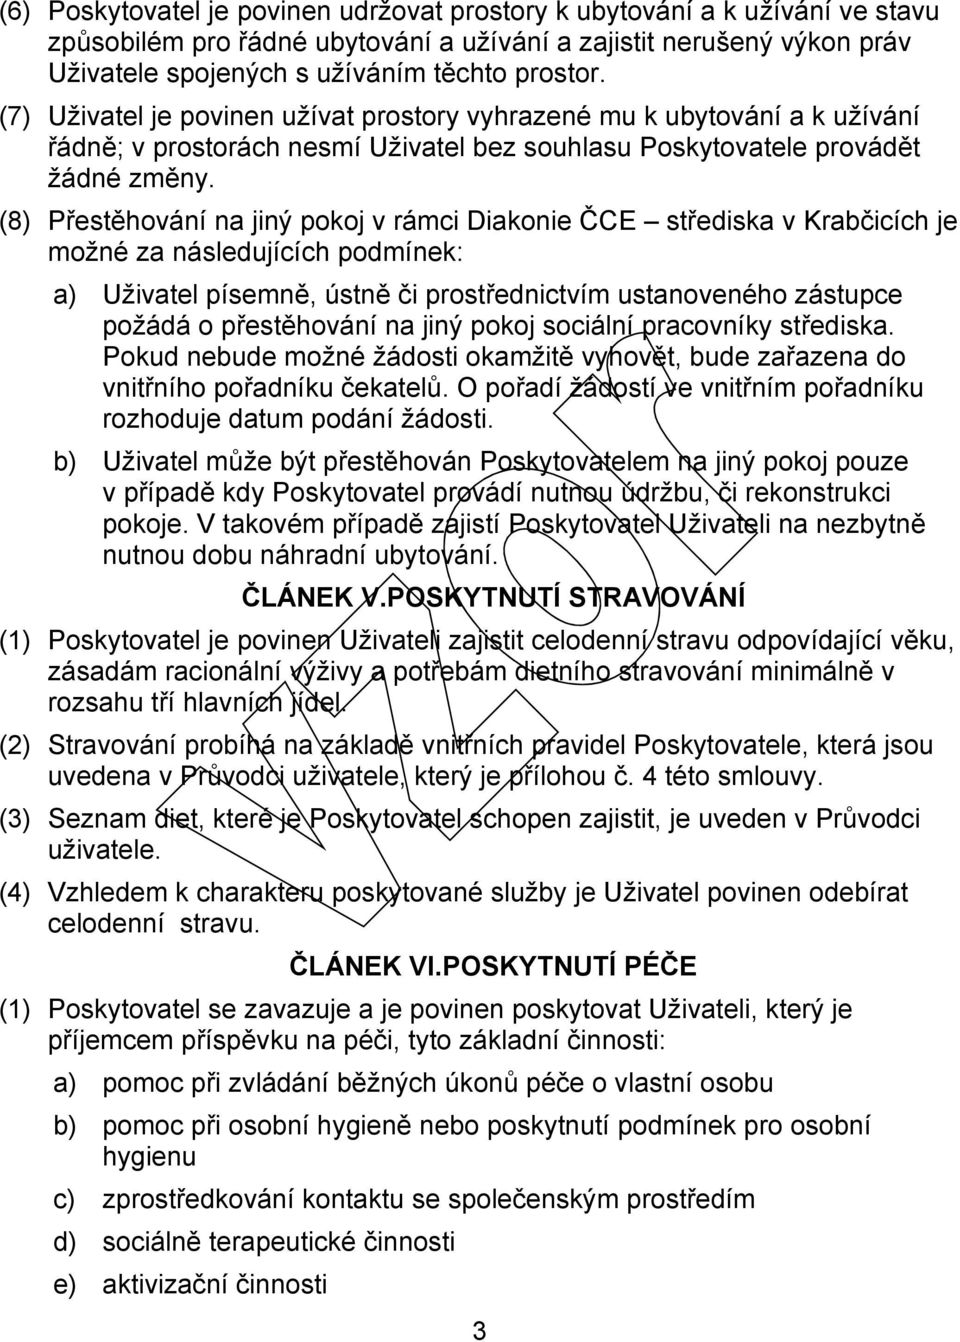 (8) Přestěhování na jiný pokoj v rámci Diakonie ČCE střediska v Krabčicích je možné za následujících podmínek: a) Uživatel písemně, ústně či prostřednictvím ustanoveného zástupce požádá o